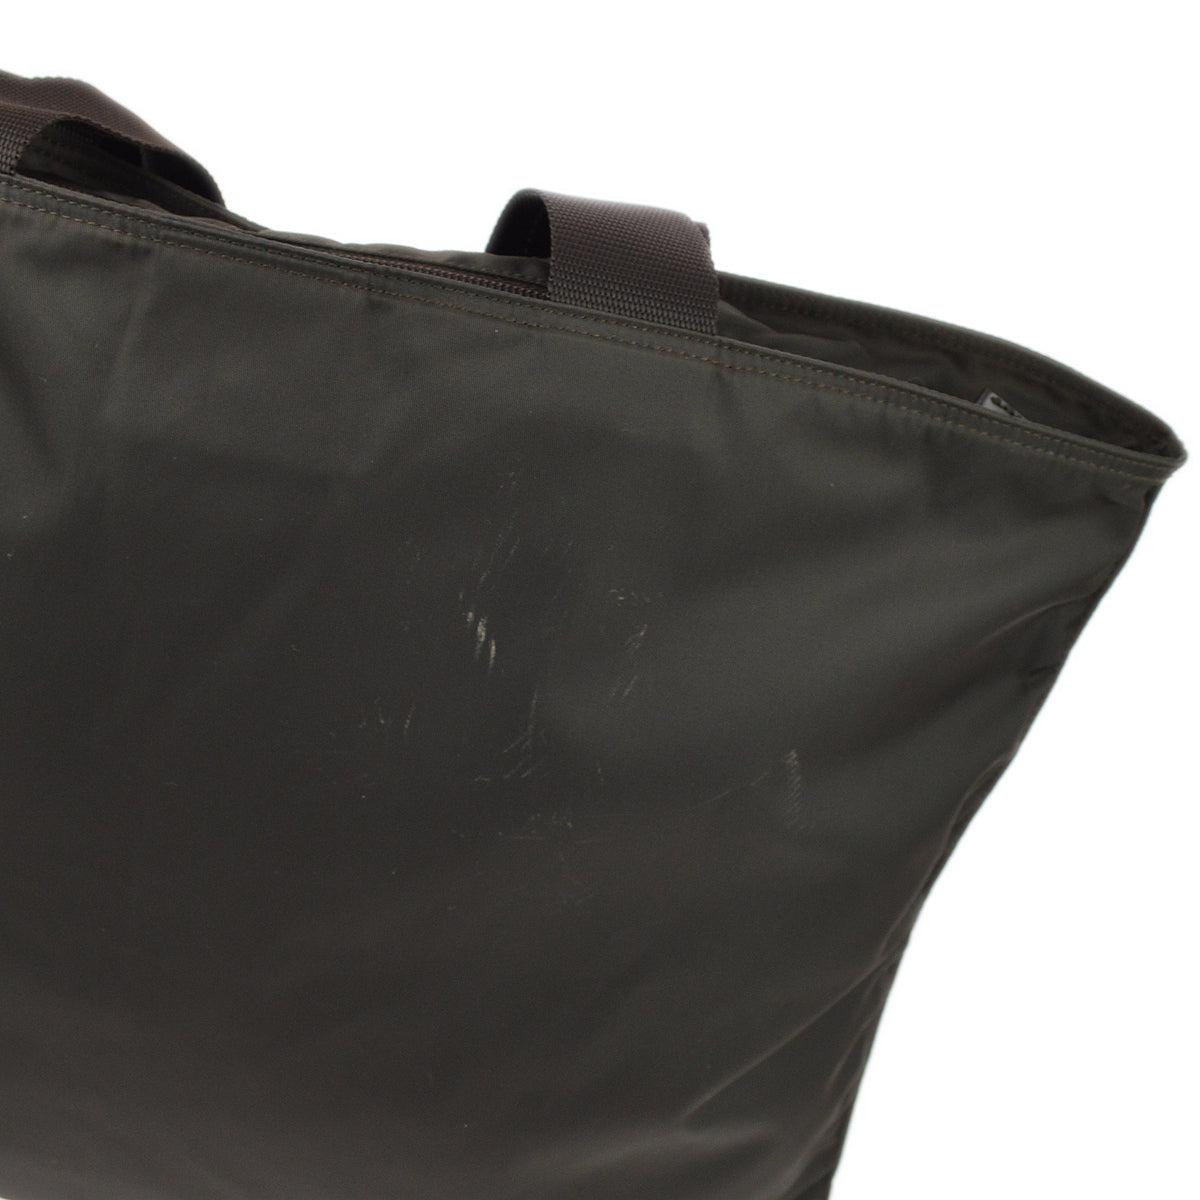 Prada Brown Nylon Tote Handbag